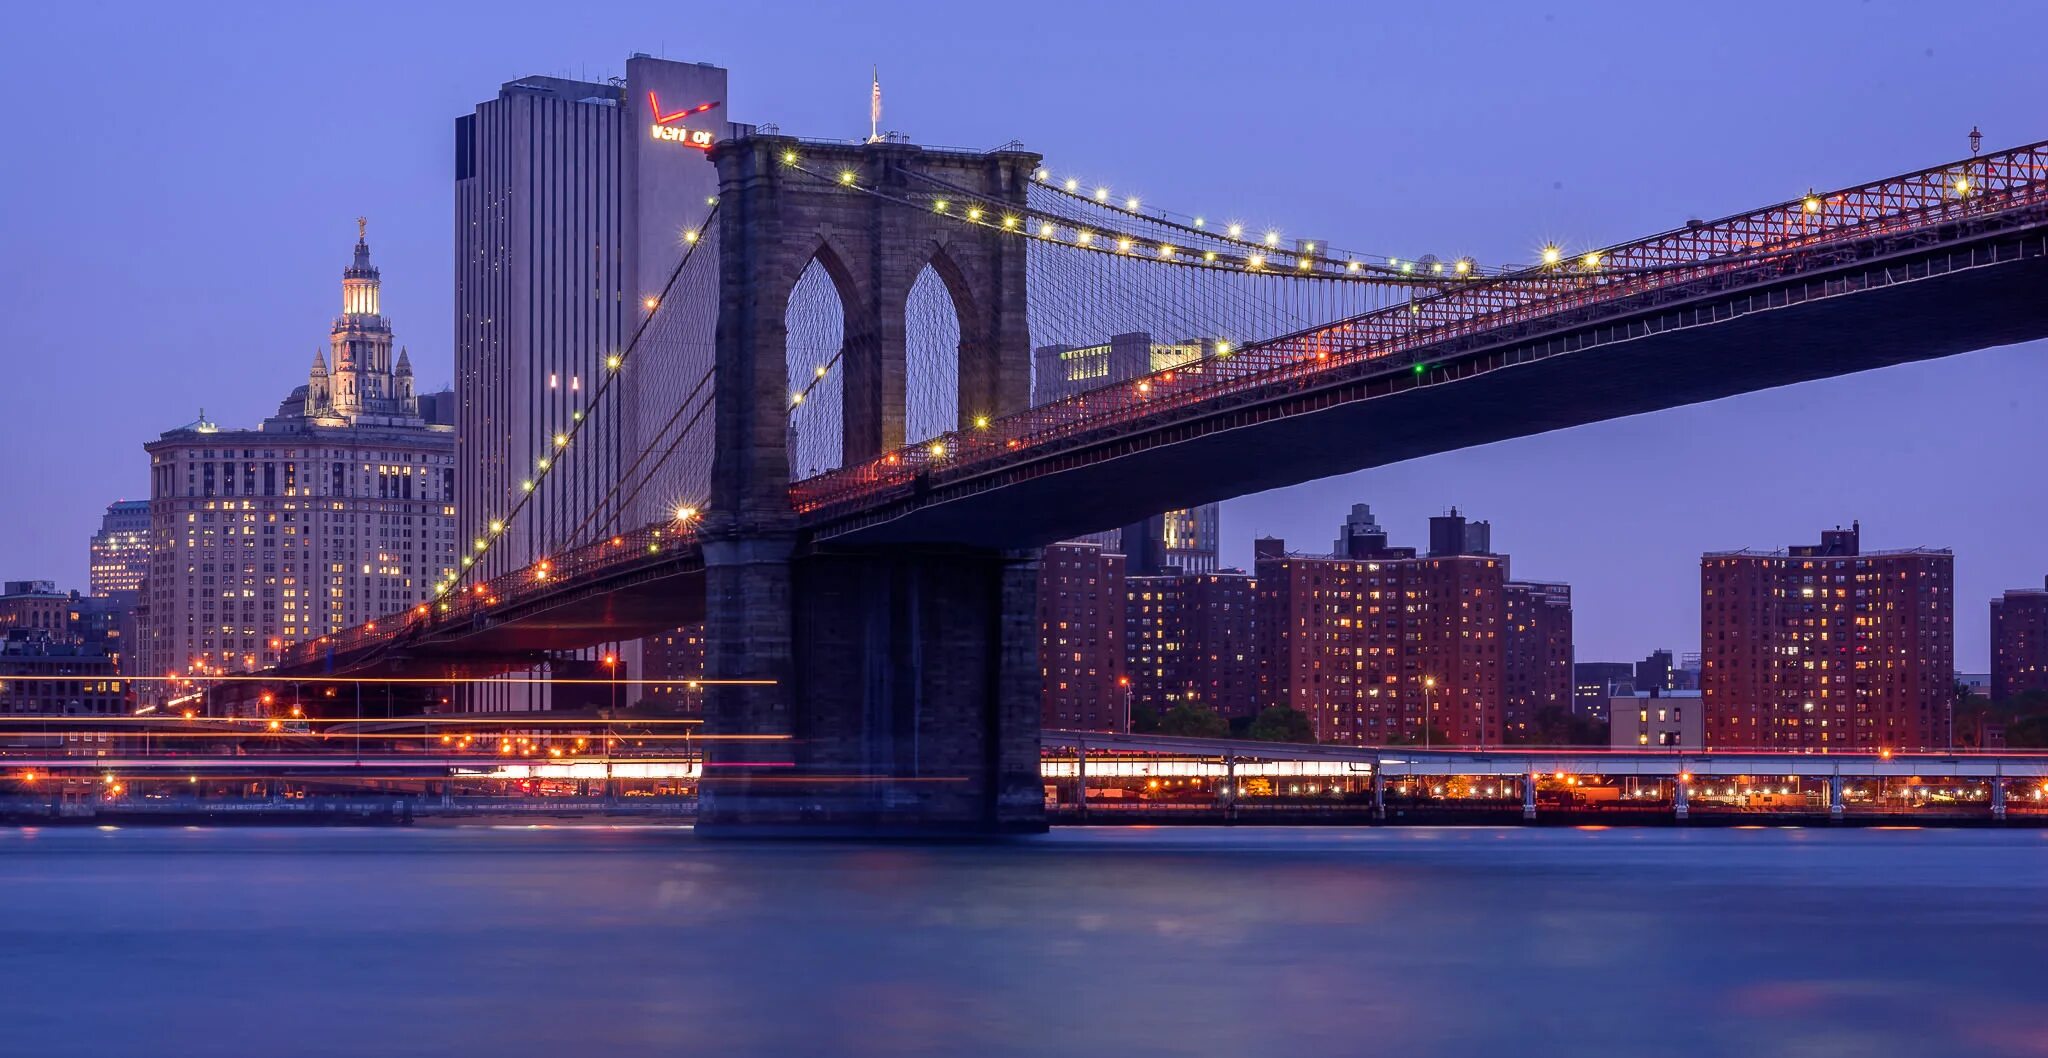 Бруклин мост. Бруклинский мост Нью-Йорк. Бруклинский мост Манхеттен в Нью-Йорке. Америка мост Бруклин. Достопримечательности Нью Йорка Бруклинский мост.